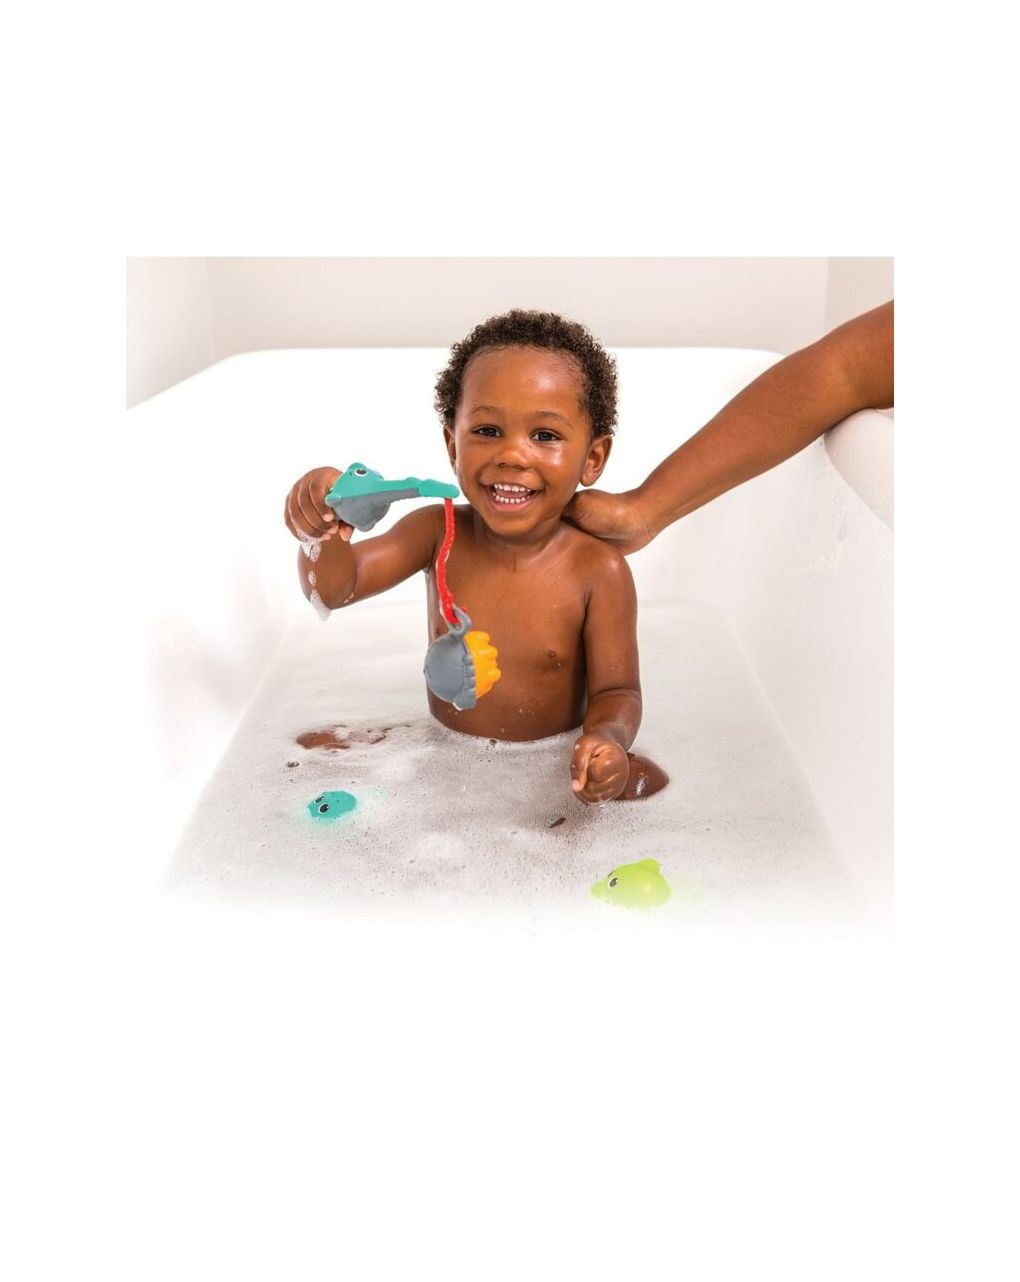 Set baño splish&splash - infantino - INFANTINO